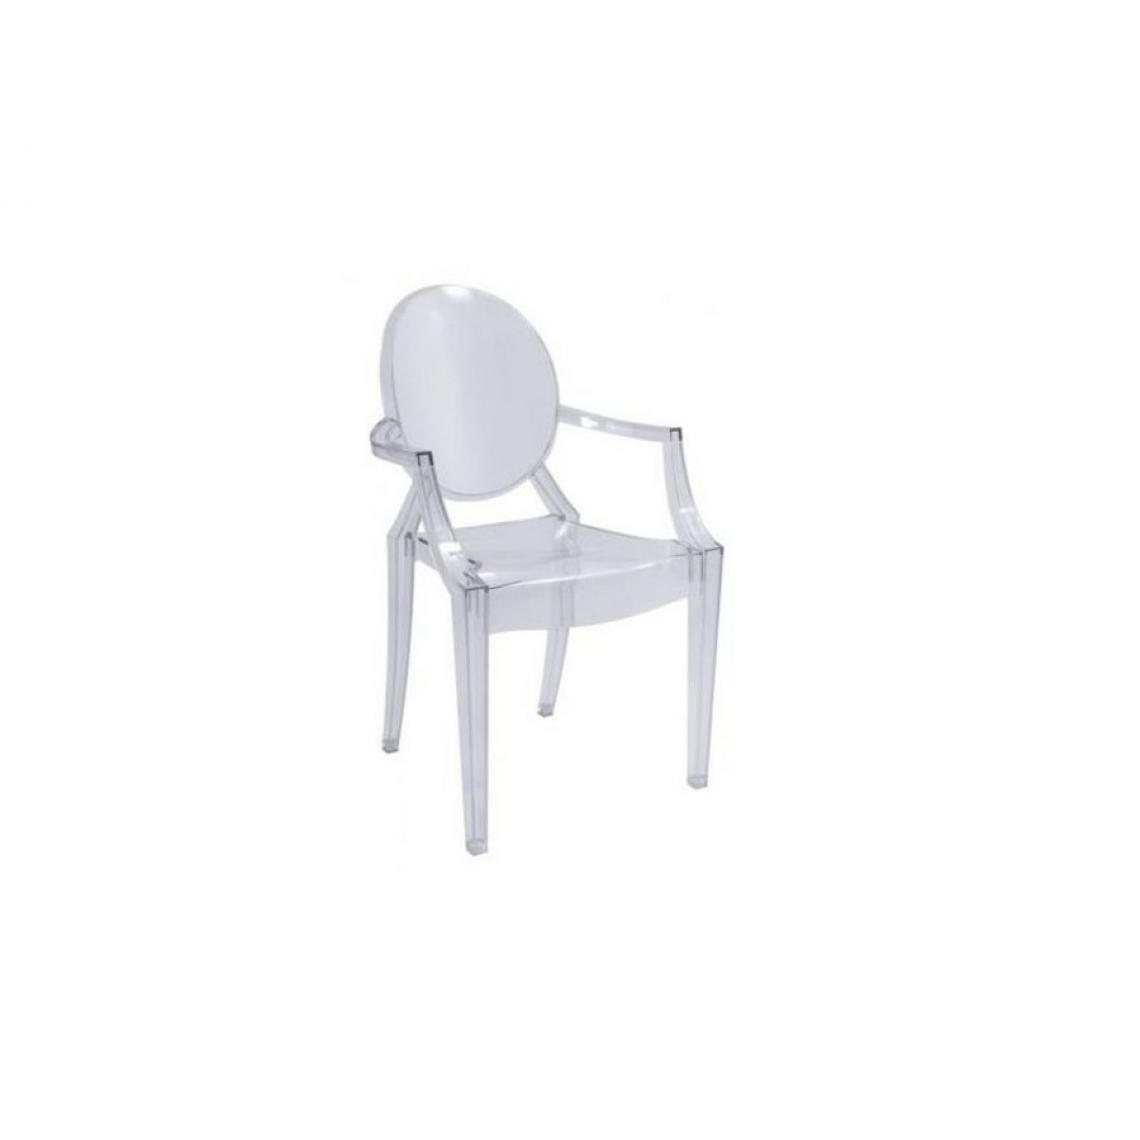 Hucoco - LUIZ | Chaise de luxe pour salon élégant | Dimensions : 92x54x42 cm | Faite en polycarbonate | Forme élégante et raffinée - Transparent - Chaises